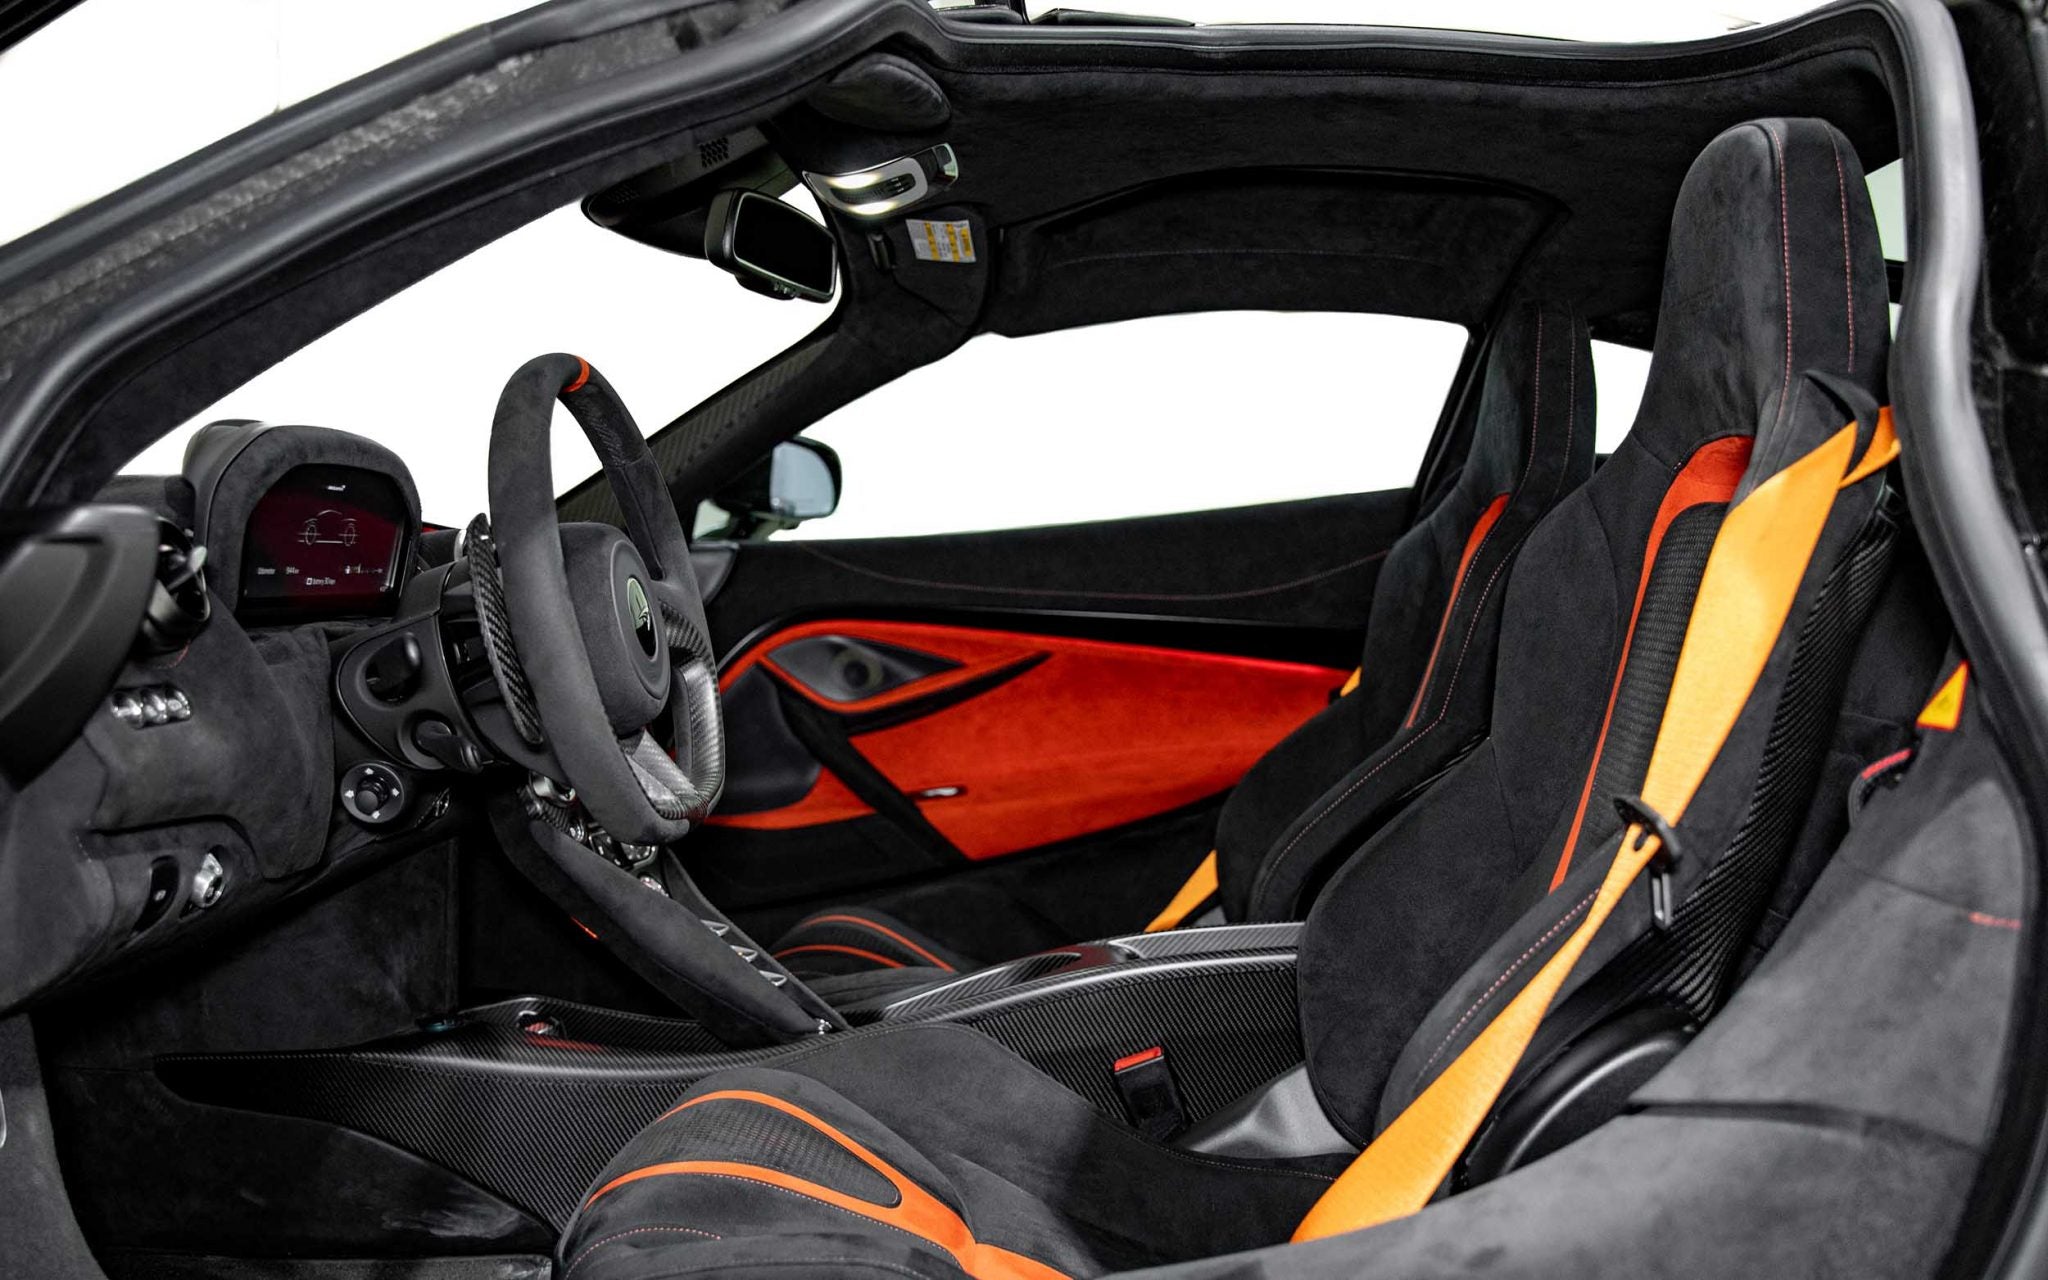 McLaren 765LT GCC Spec - With Warranty